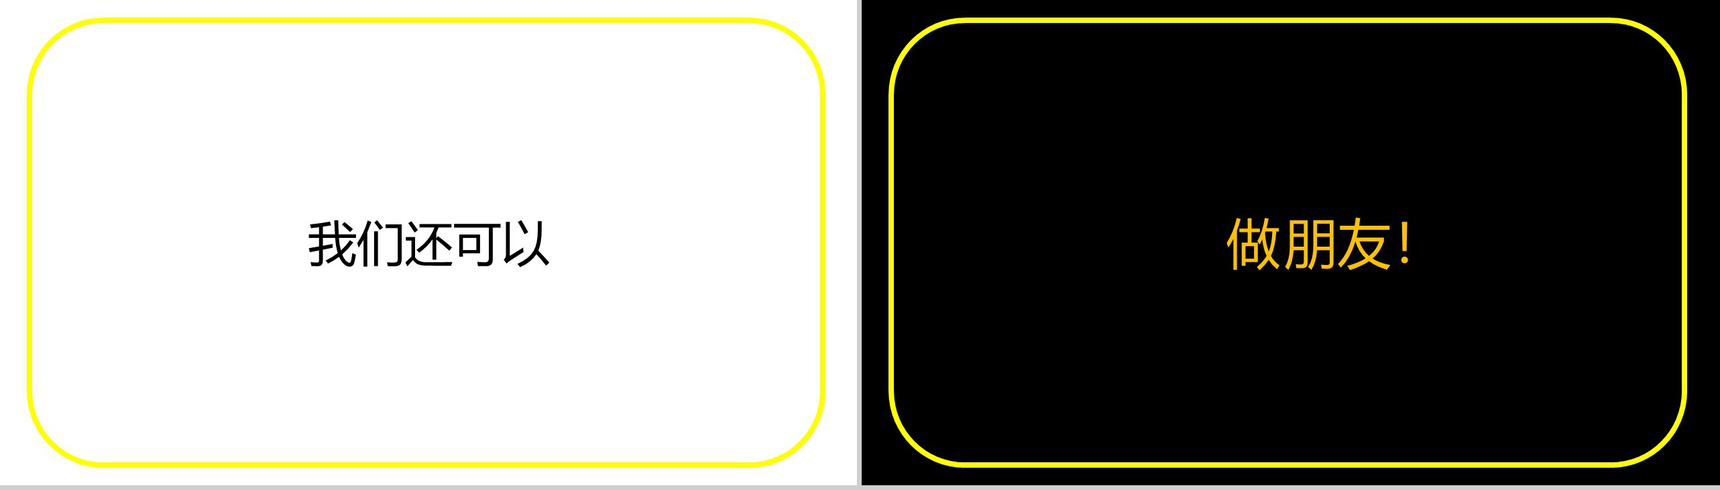 黄色框边微立体商务快闪自我介绍PPT模板-13